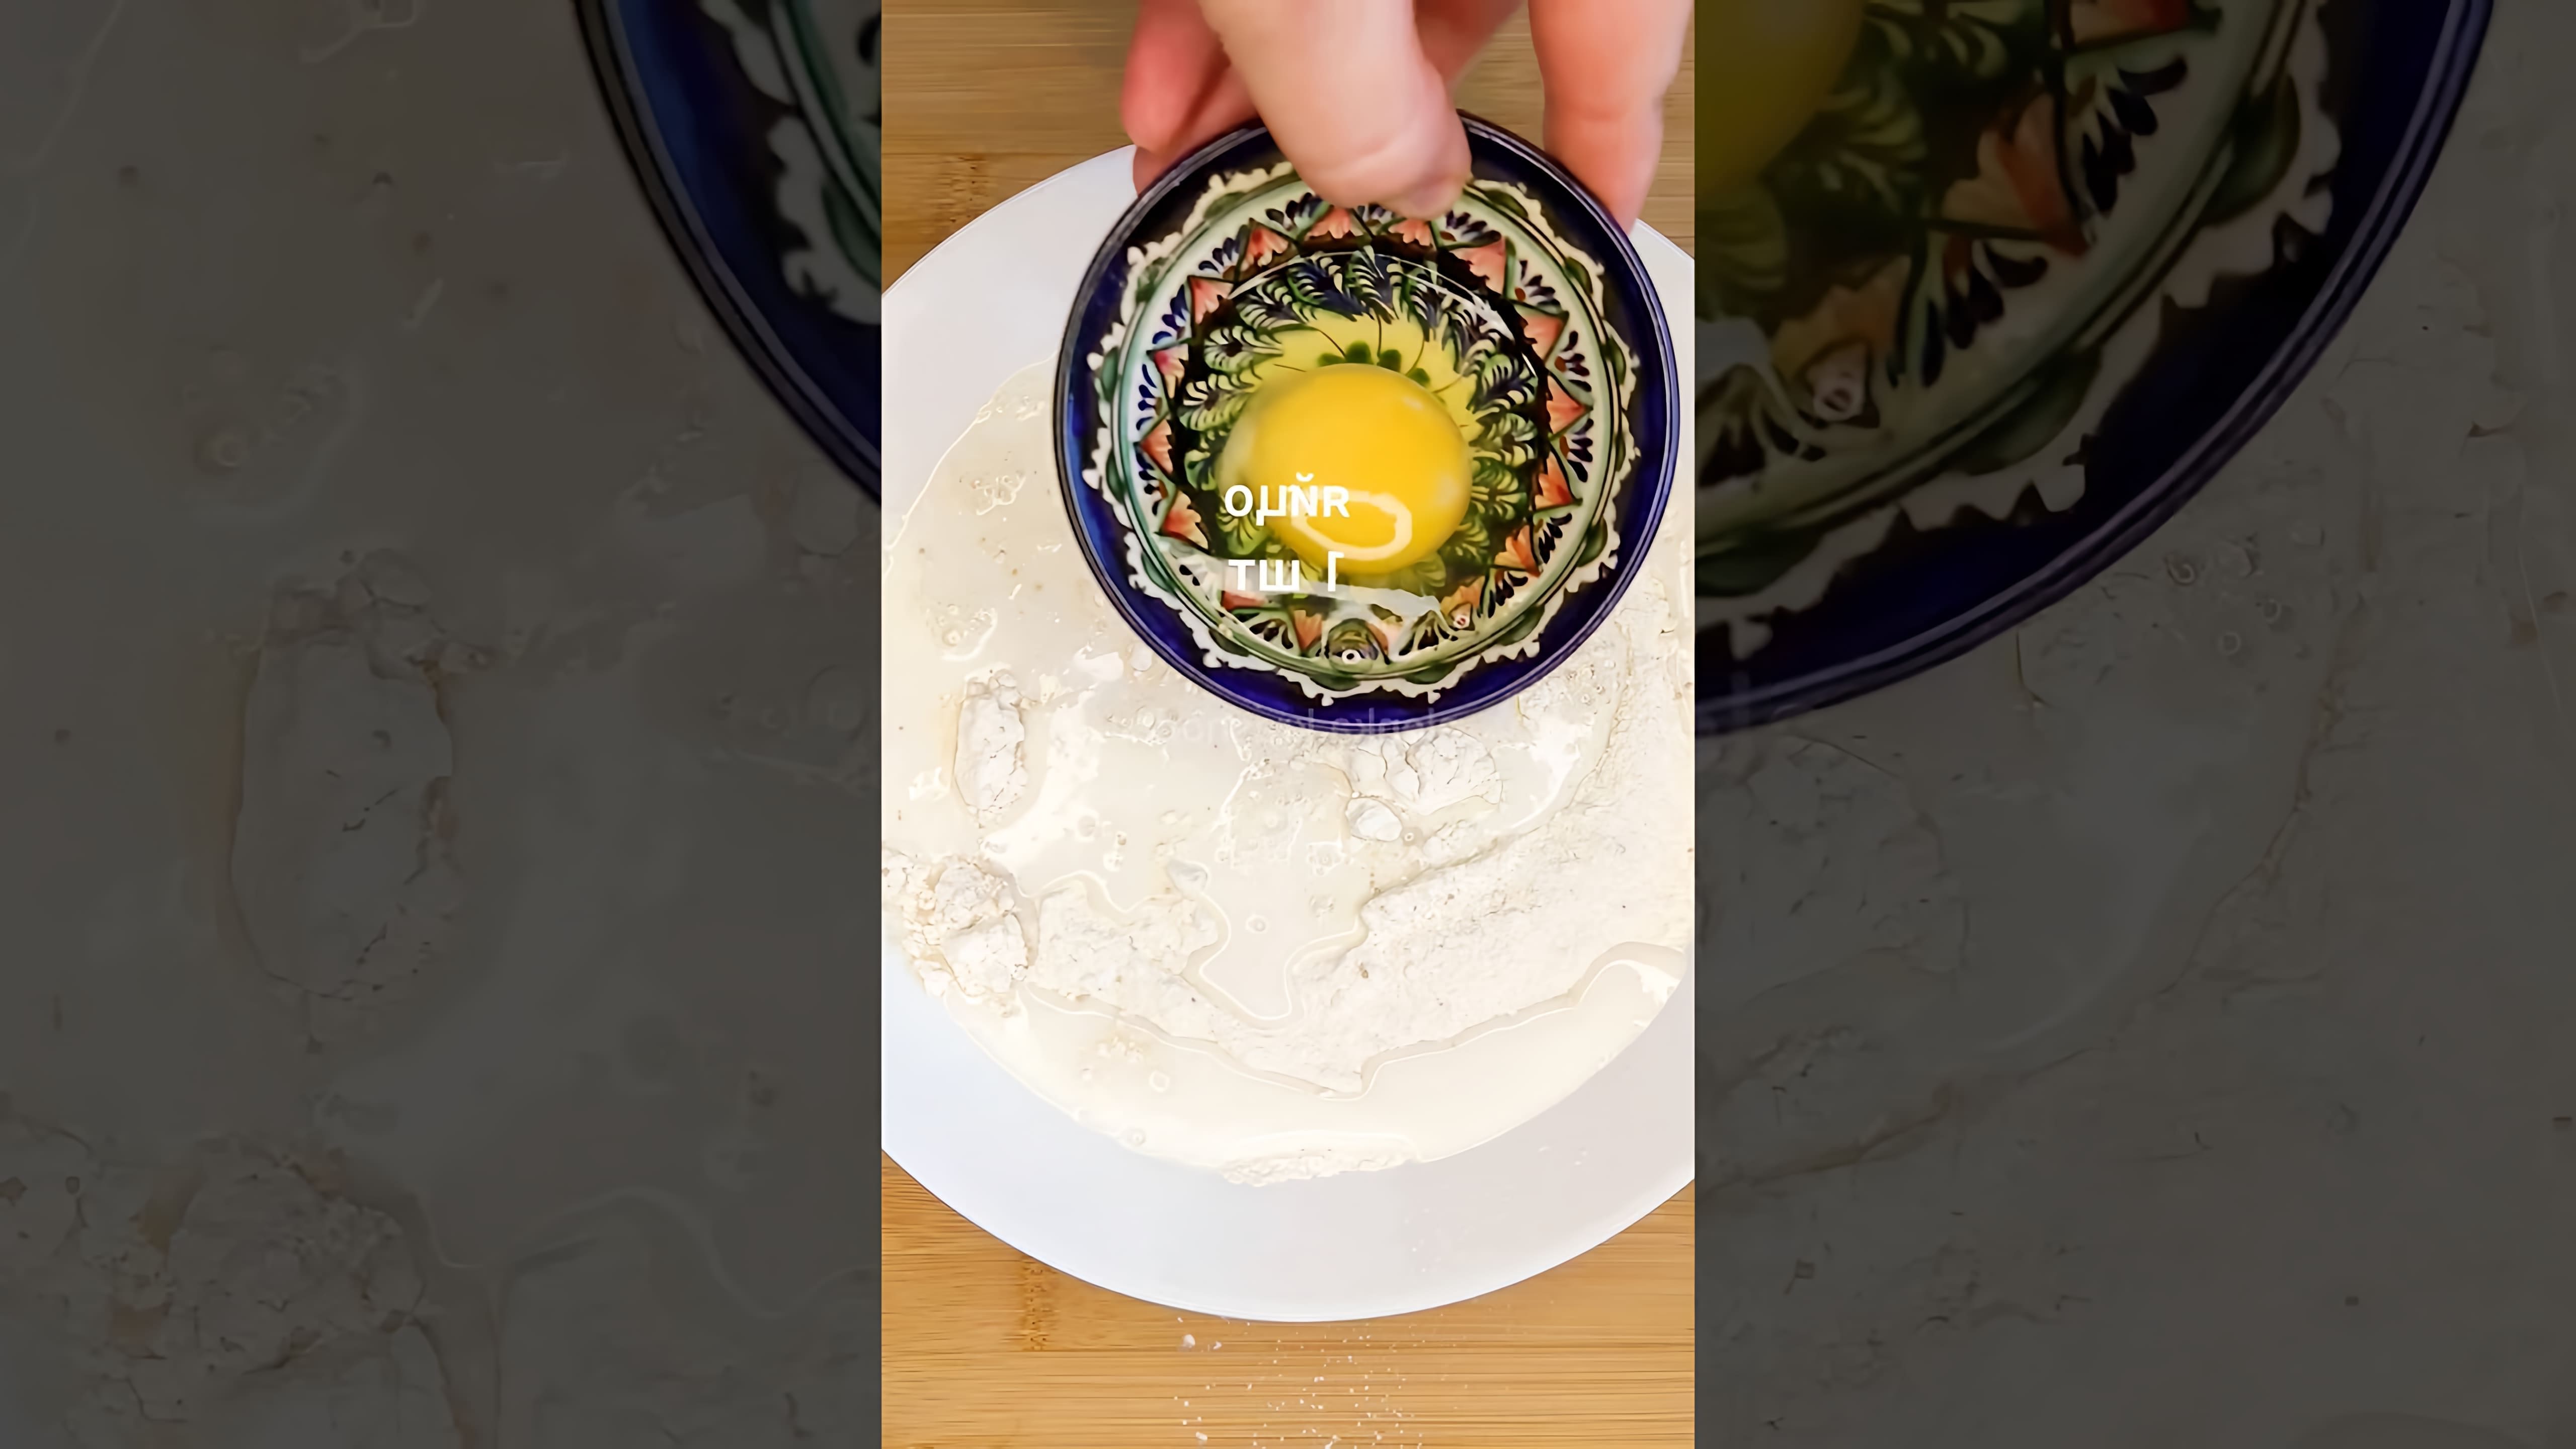 В этом видео демонстрируется процесс приготовления пончиков, которые напоминают те, что готовила бабушка в детстве